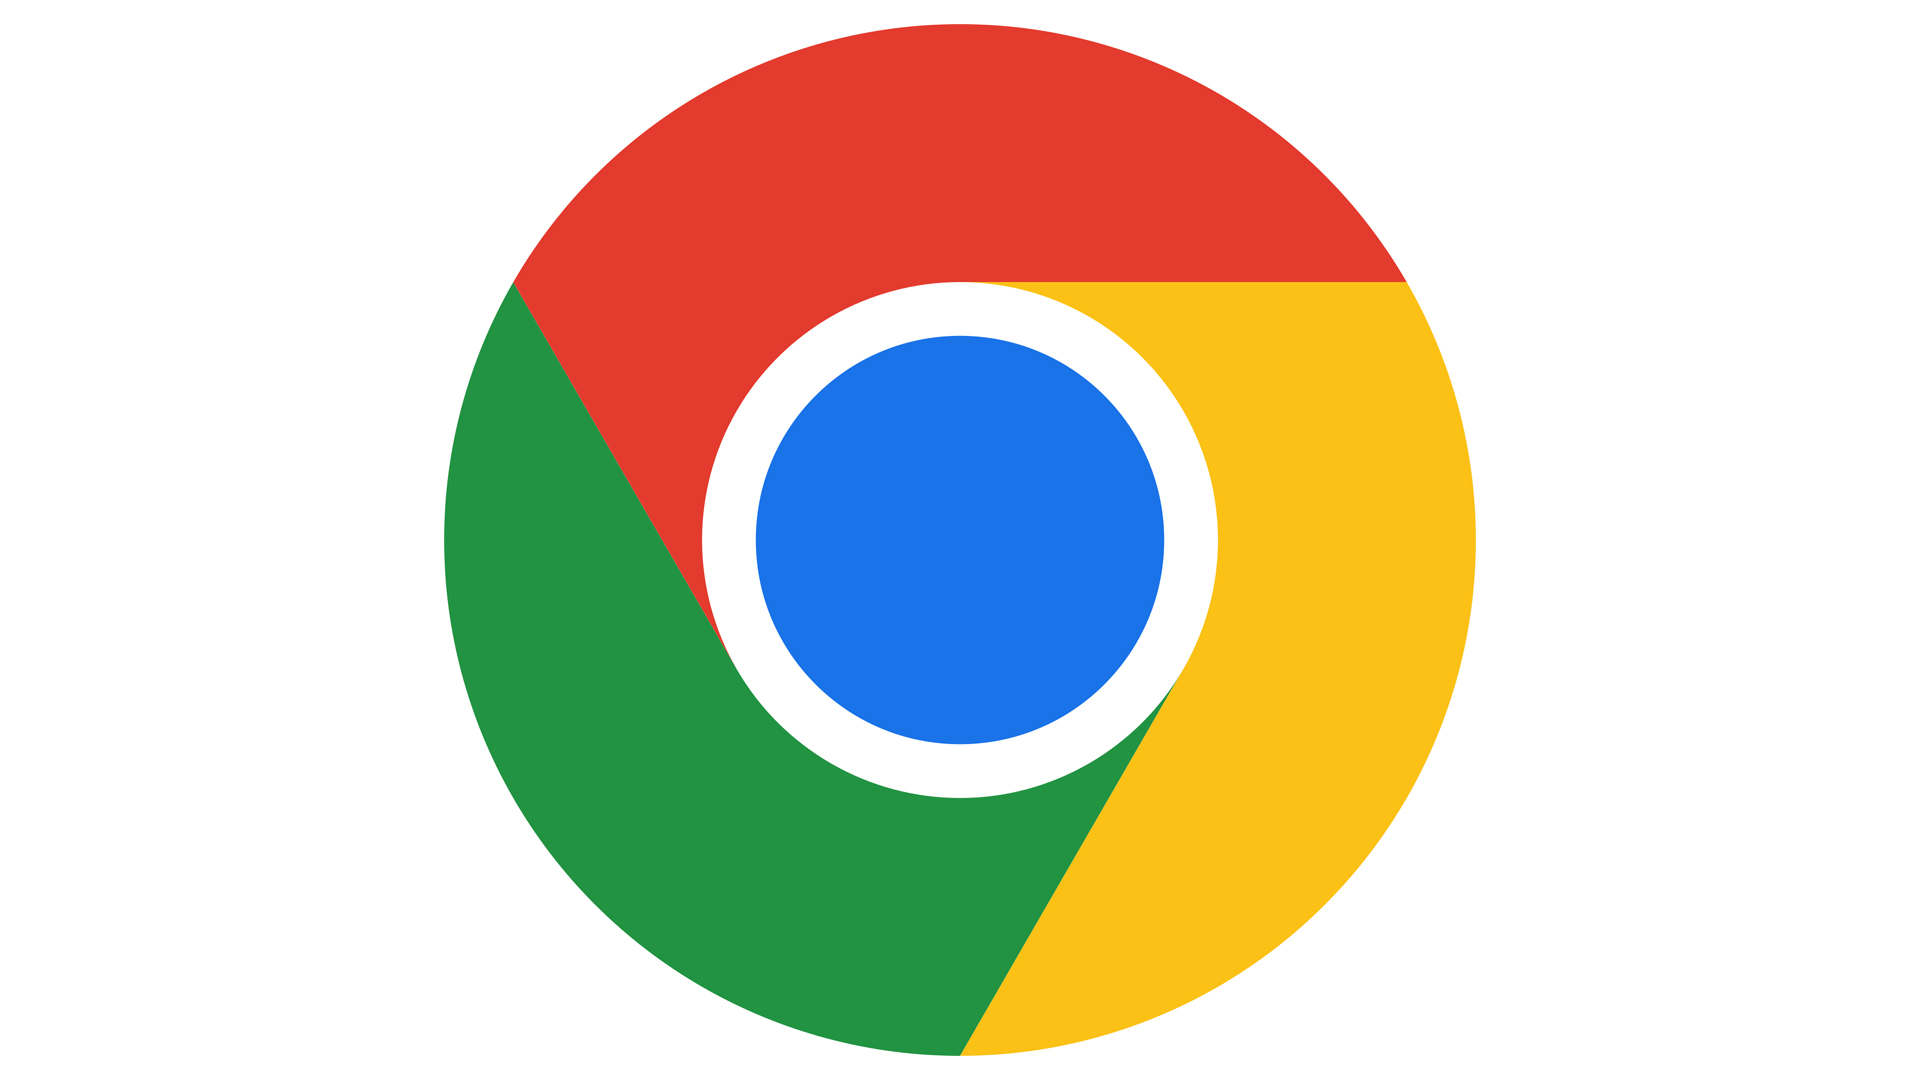 The 2022 Chrome logo